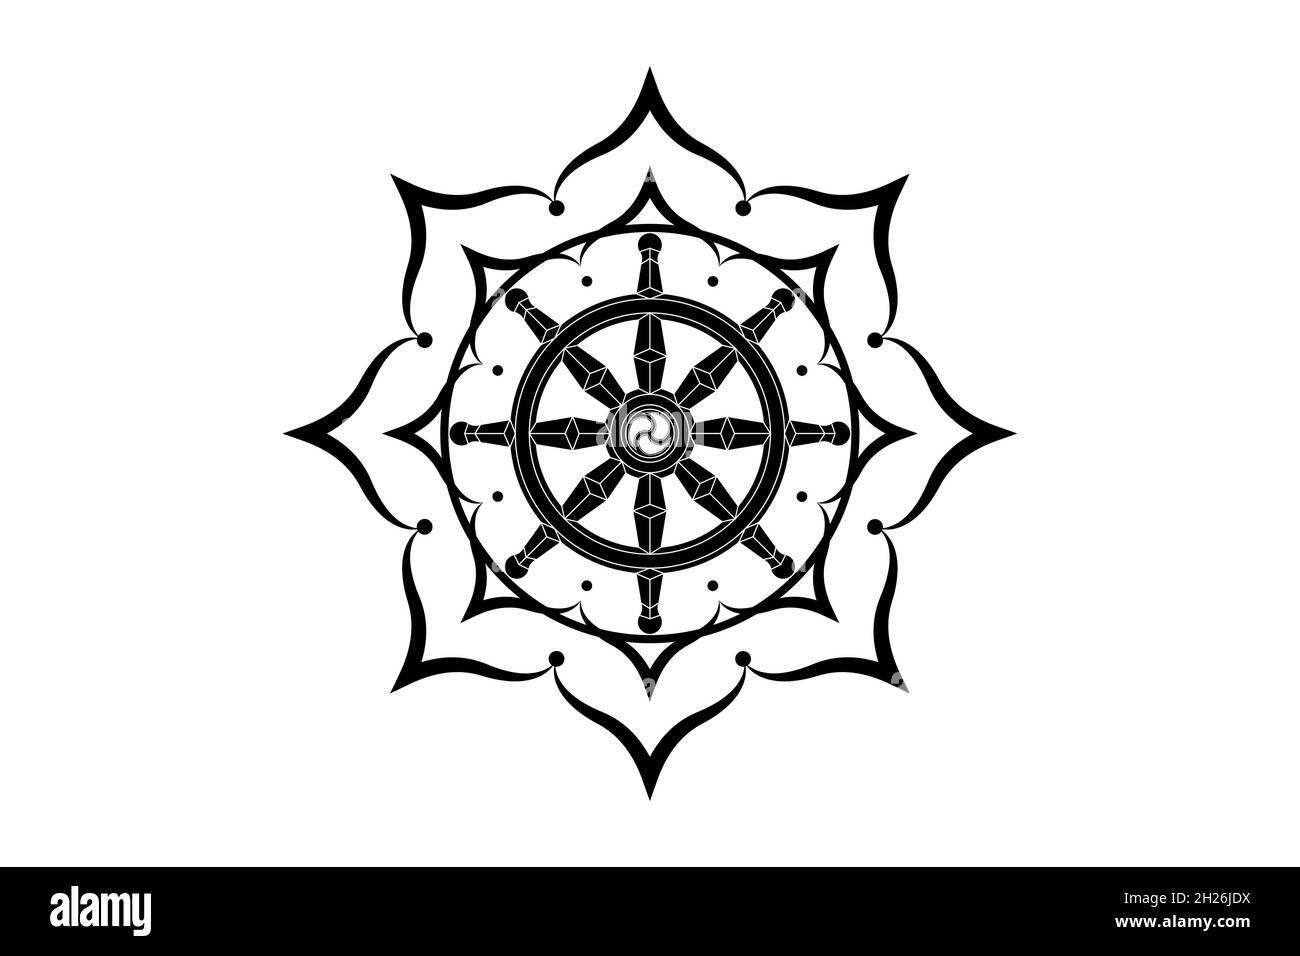 Icona del logo della ruota Dharma. Buddhismo sacro fiore di loto simbolo. Dharmachakra, otto petali. Illustrazione vettoriale isolata su sfondo bianco Illustrazione Vettoriale